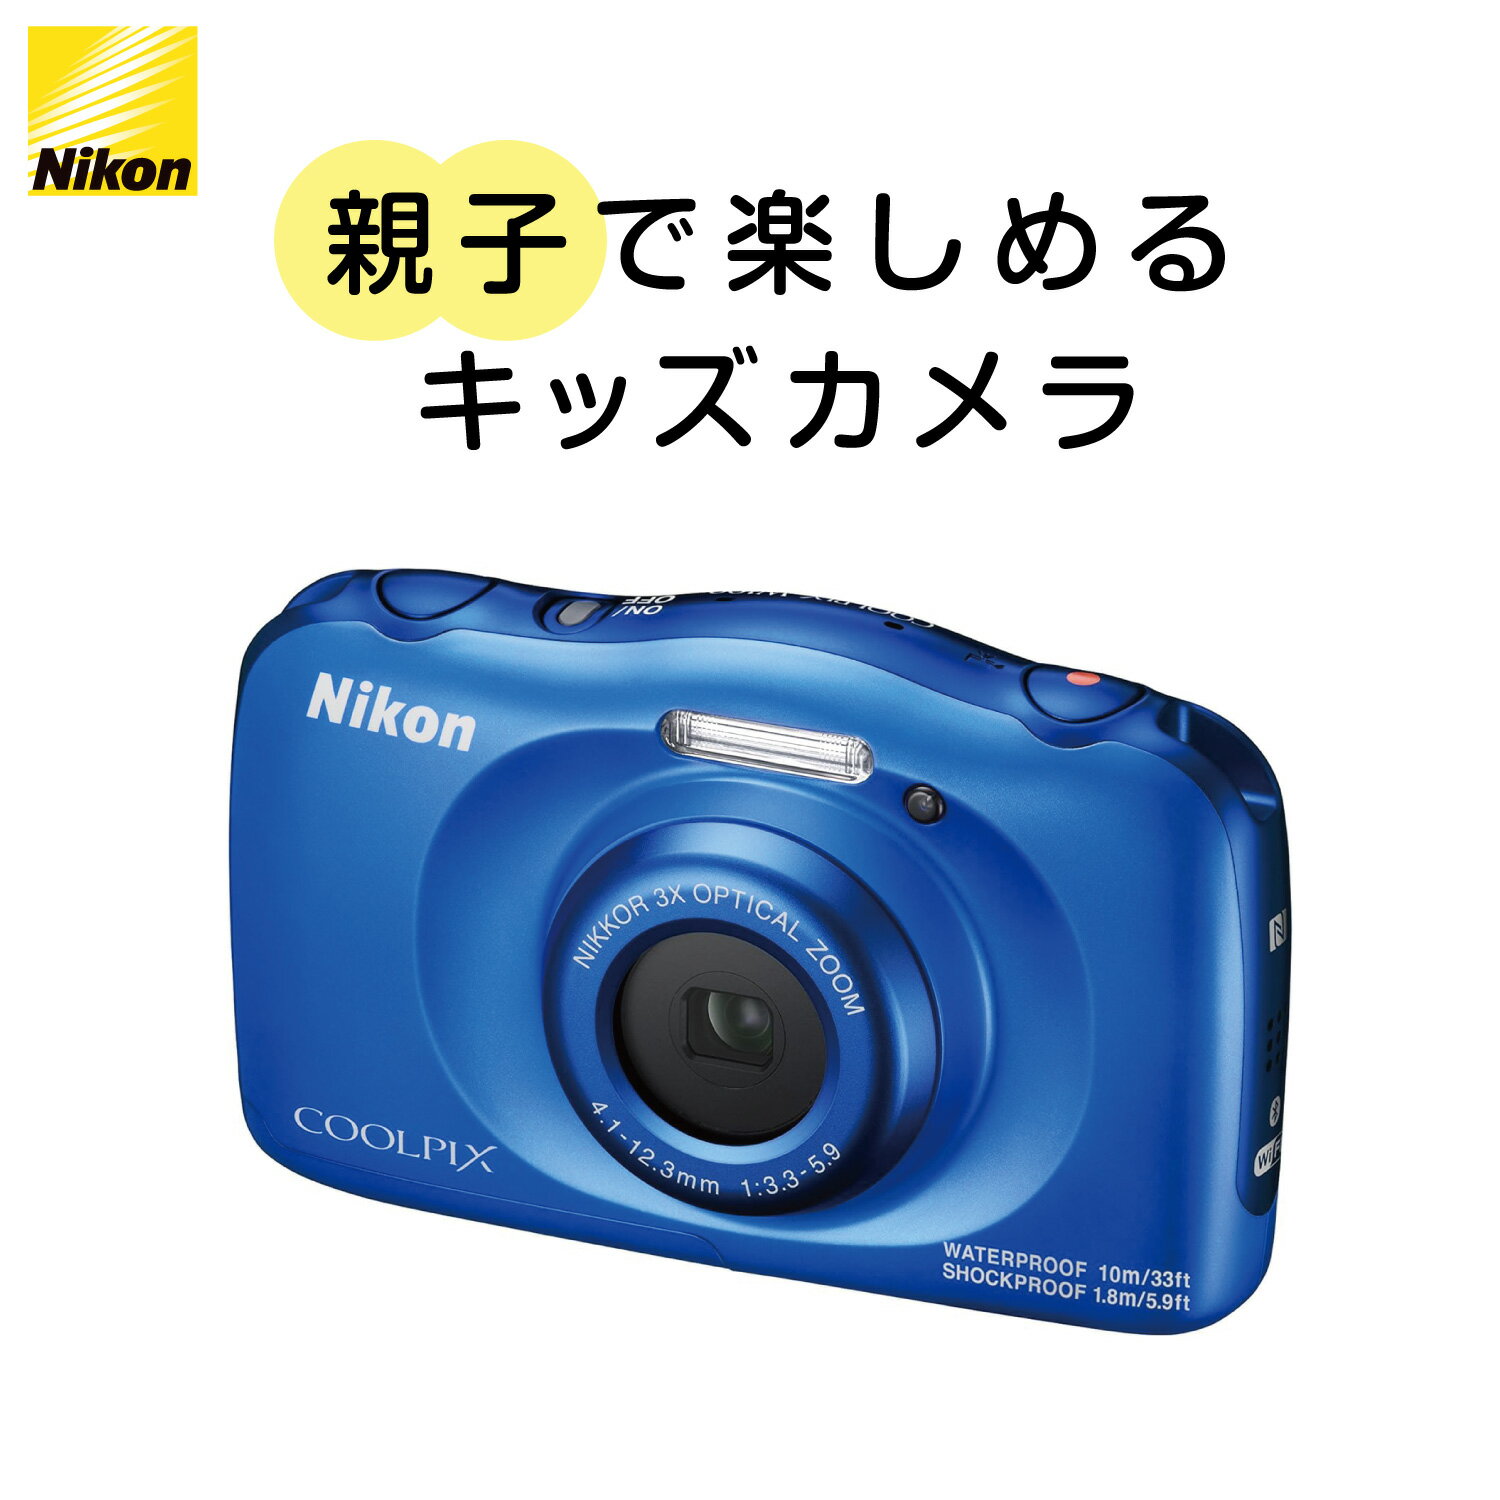 【10%OFFクーポン配布中】Nikon デジタルカメラ COOLPIX (クールピクス) W100 ブルー 防水10m アウトドア W100BL | ニコン デジカメ Wi-Fi Bluetooth NFC microHDMI 中古カメラ 中古 カメラ